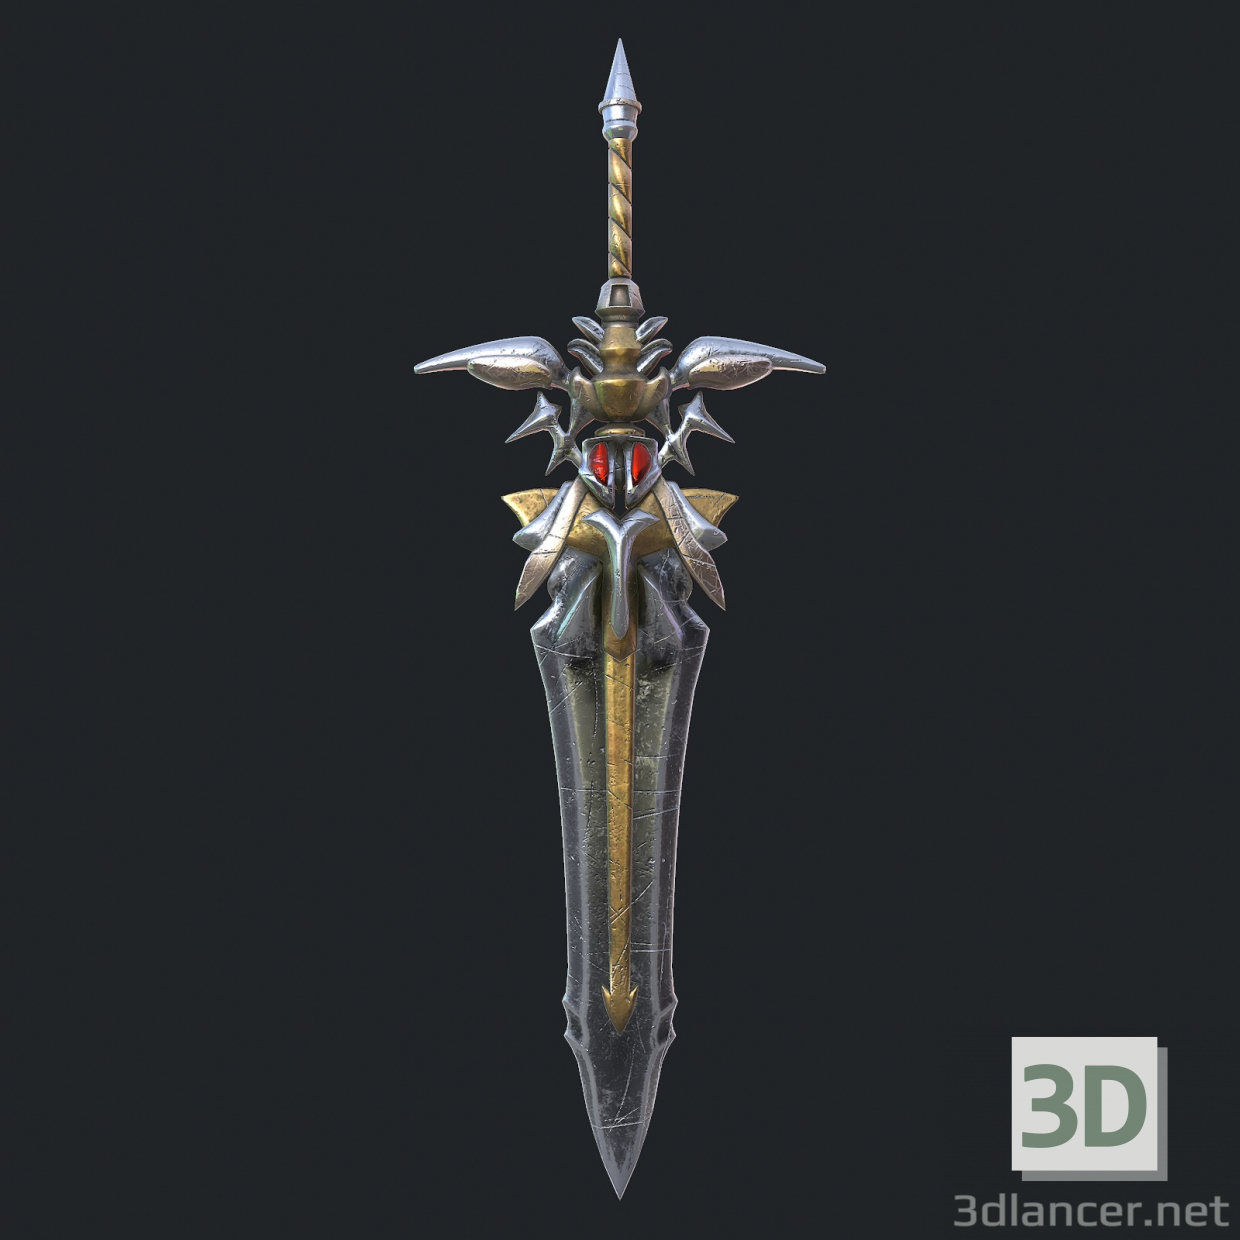 Espada fantasía 19 modelo 3d 3D modelo Compro - render